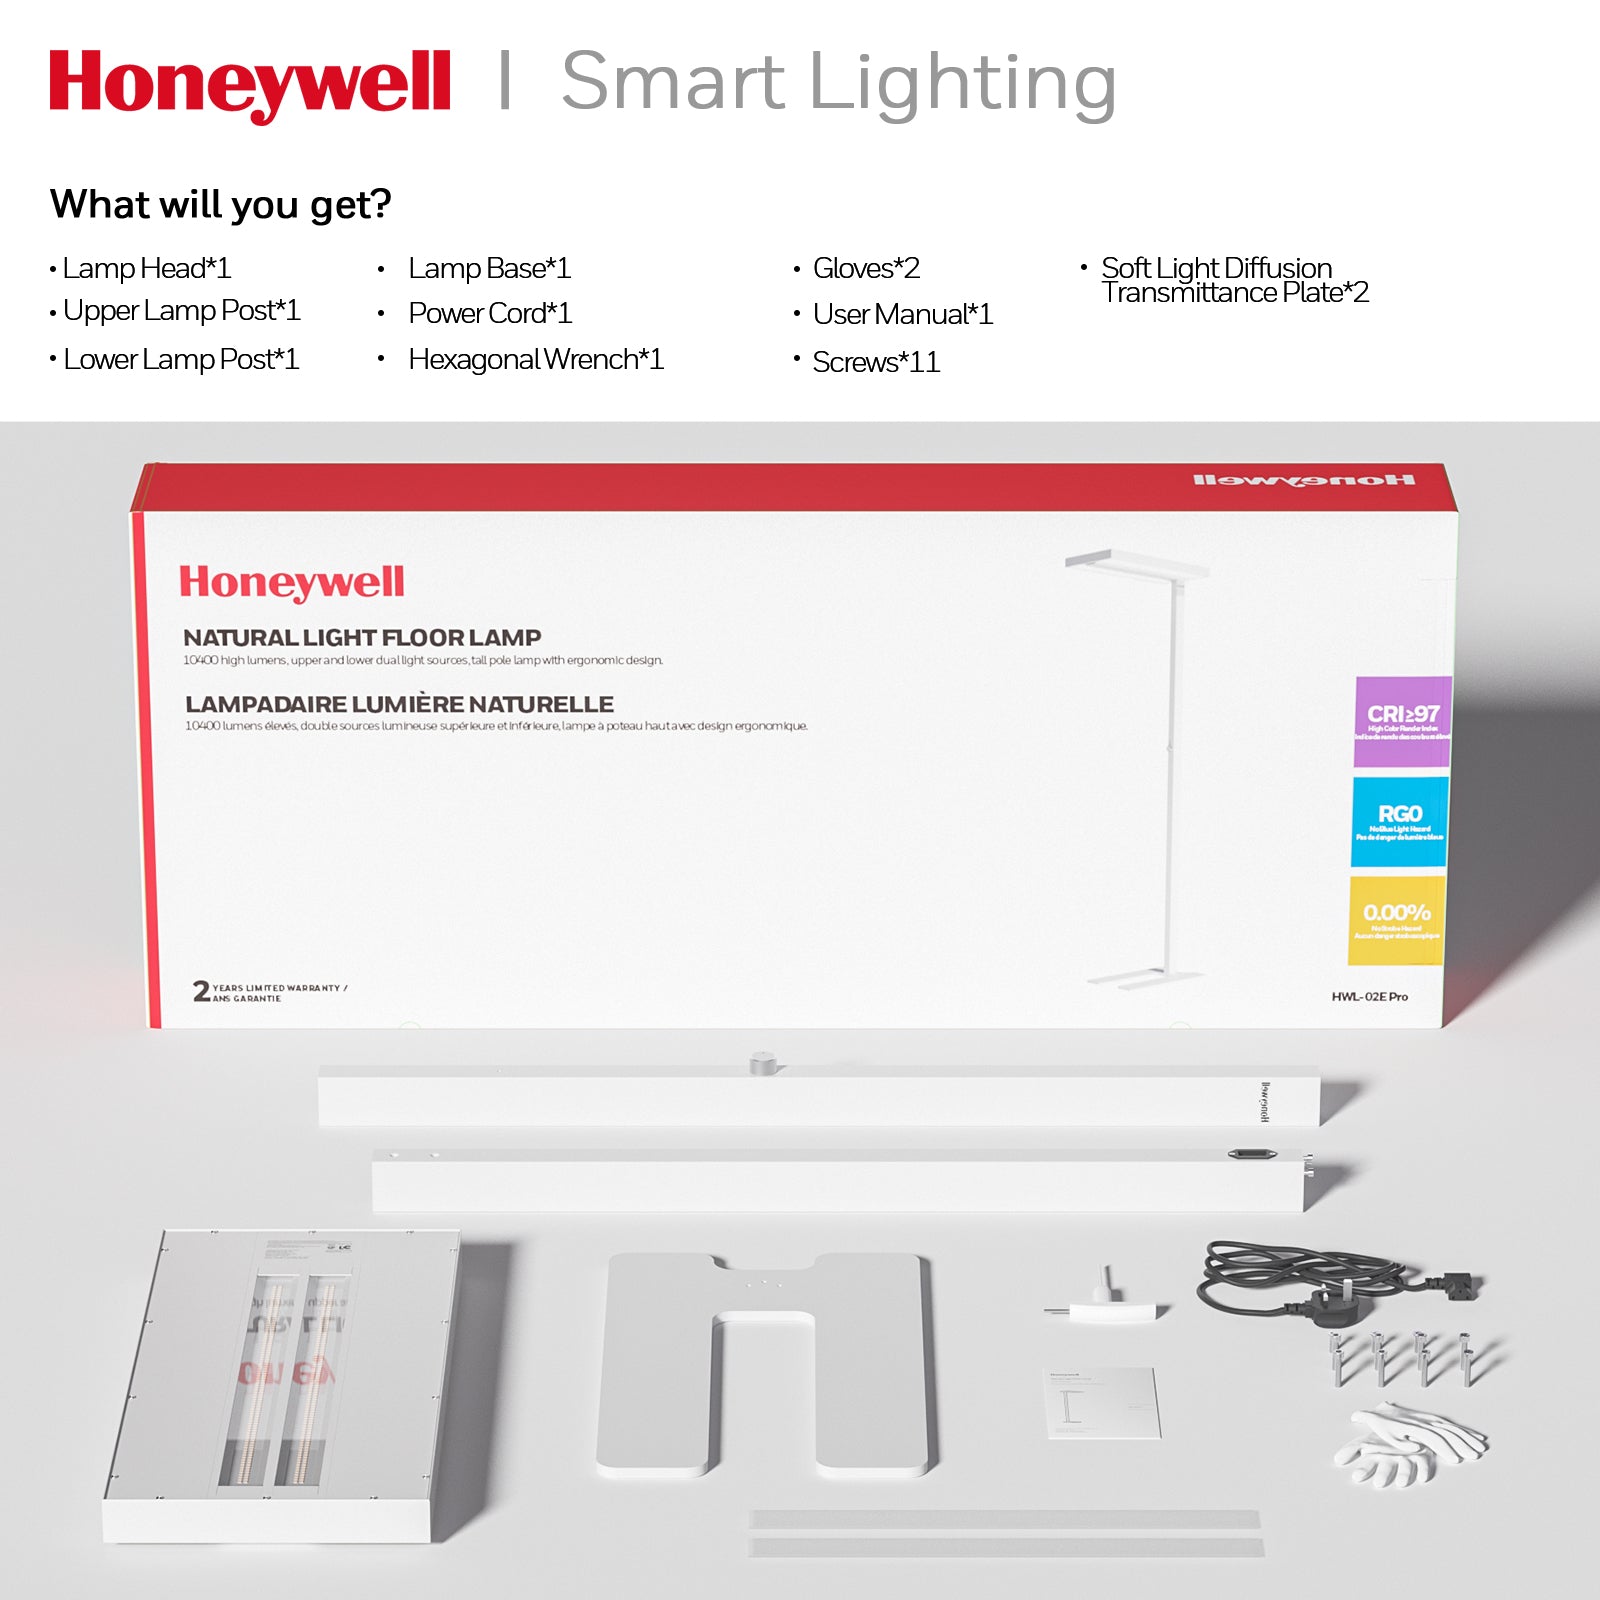 Honeywell HWL-02E Pro Stehleuchte mit natürlichem Licht